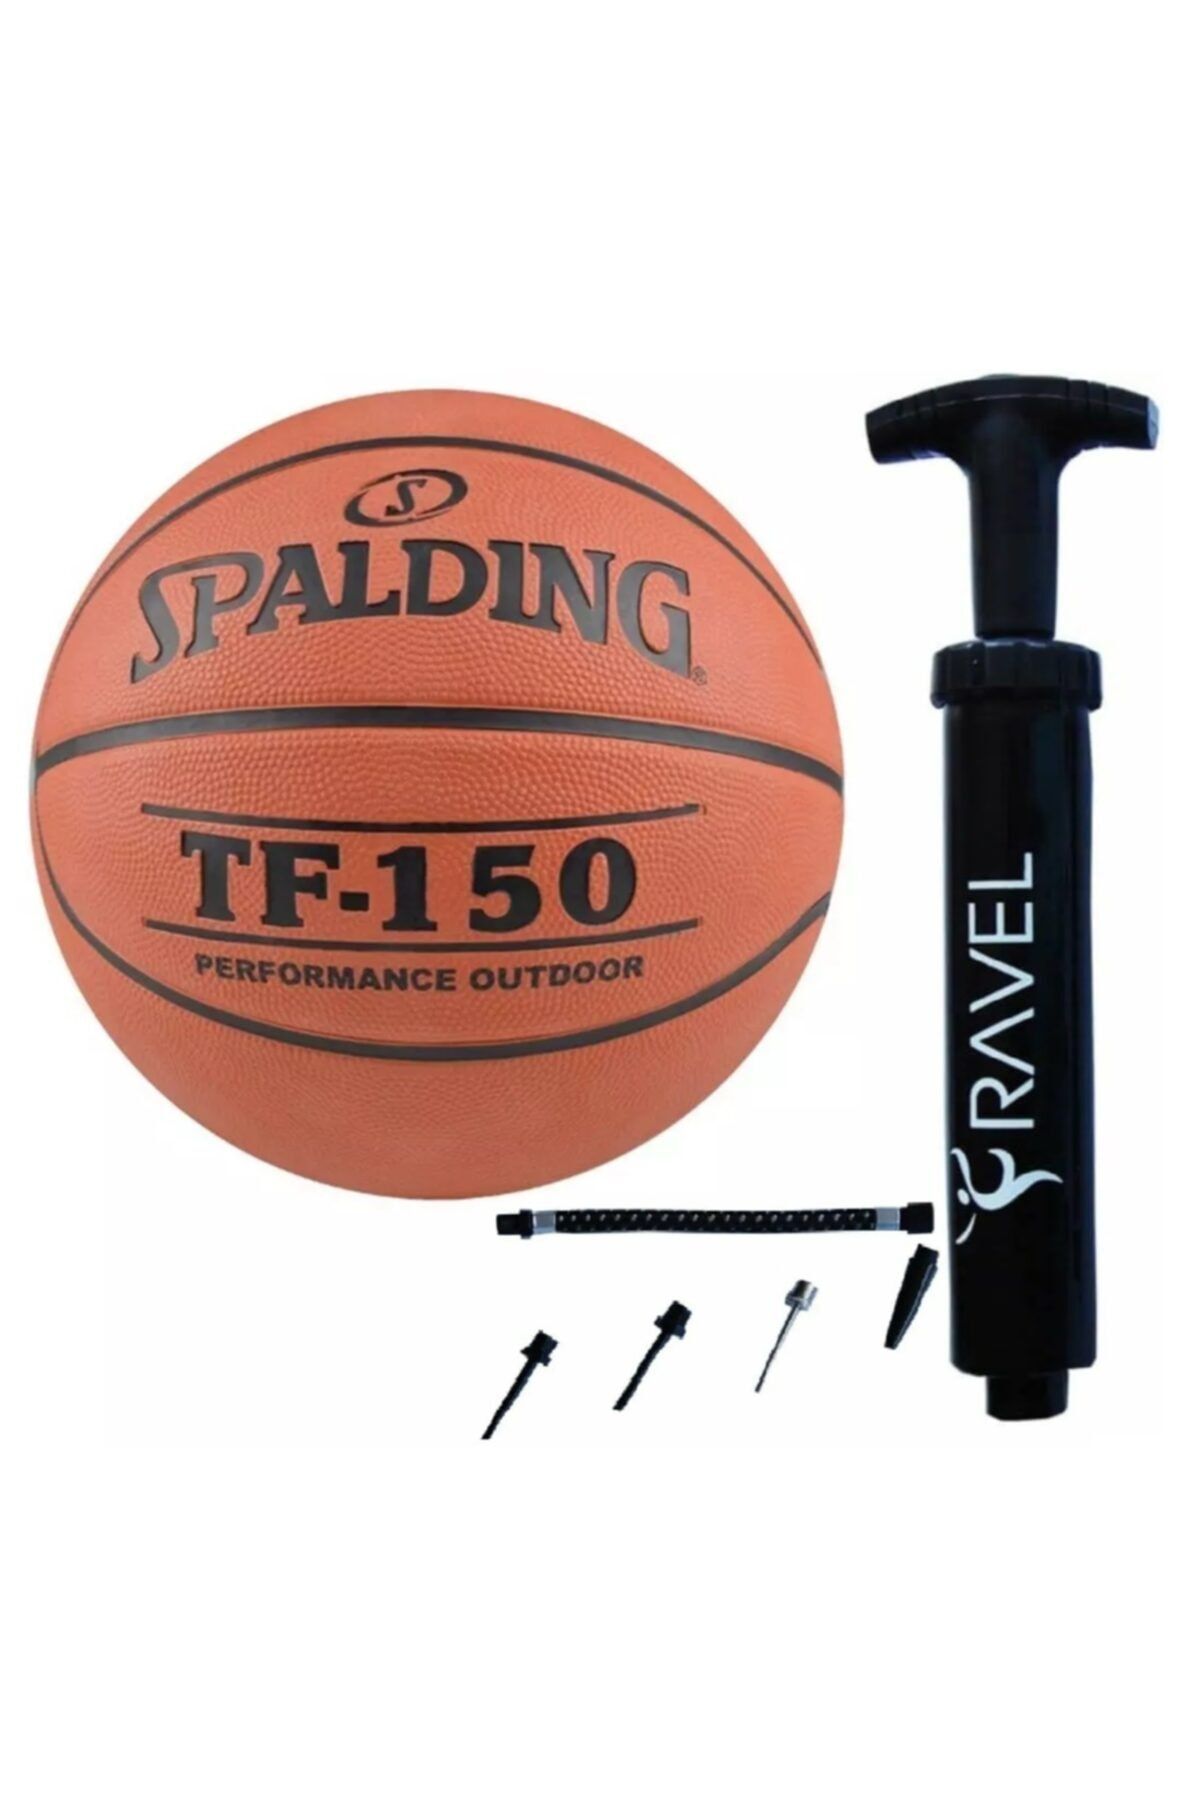 Spalding Tf-150 Basketbol Topu Çok Amaçlı Top Pompası, 2'li Set